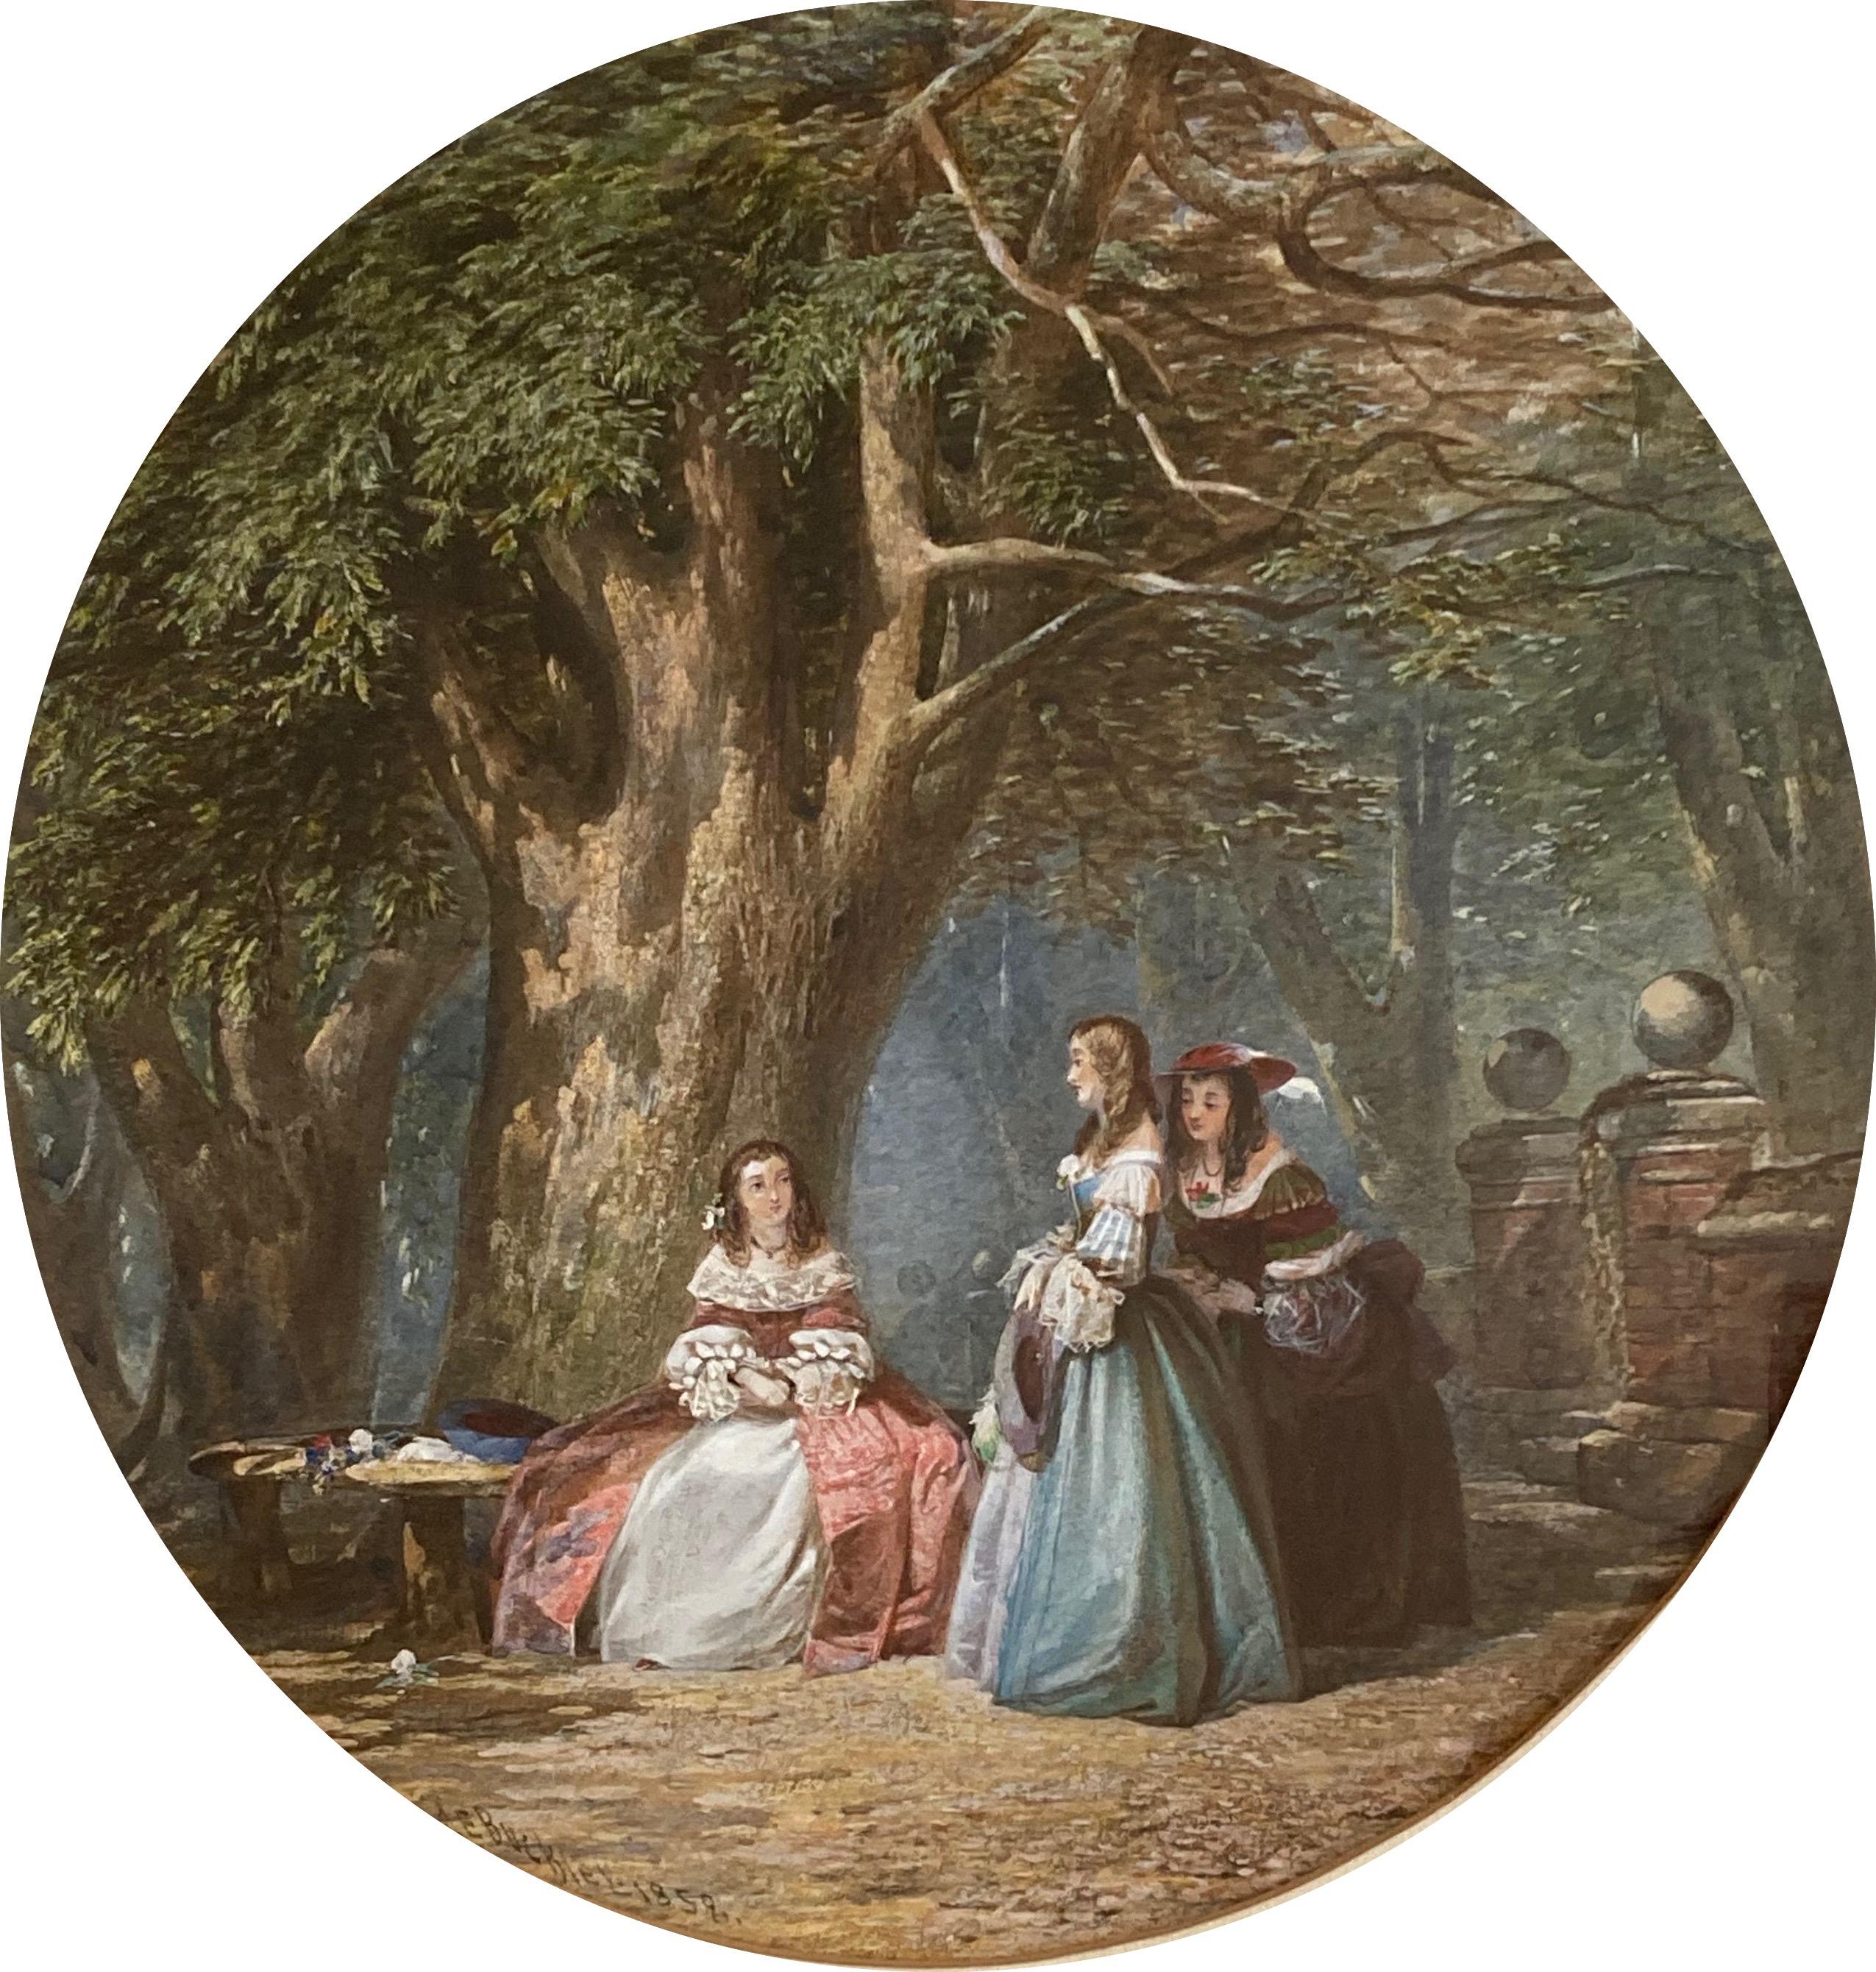 Une scène enchanteresse de jeunes filles conversant à l'ombre d'un chêne, avec de beaux détails et des couleurs vives.

John Edmund Buckley ( 1824-1876)
Demoiselles sous un chêne
Signé et daté 1858
Aquarelle 
11½ pouces, circulaire, sans le